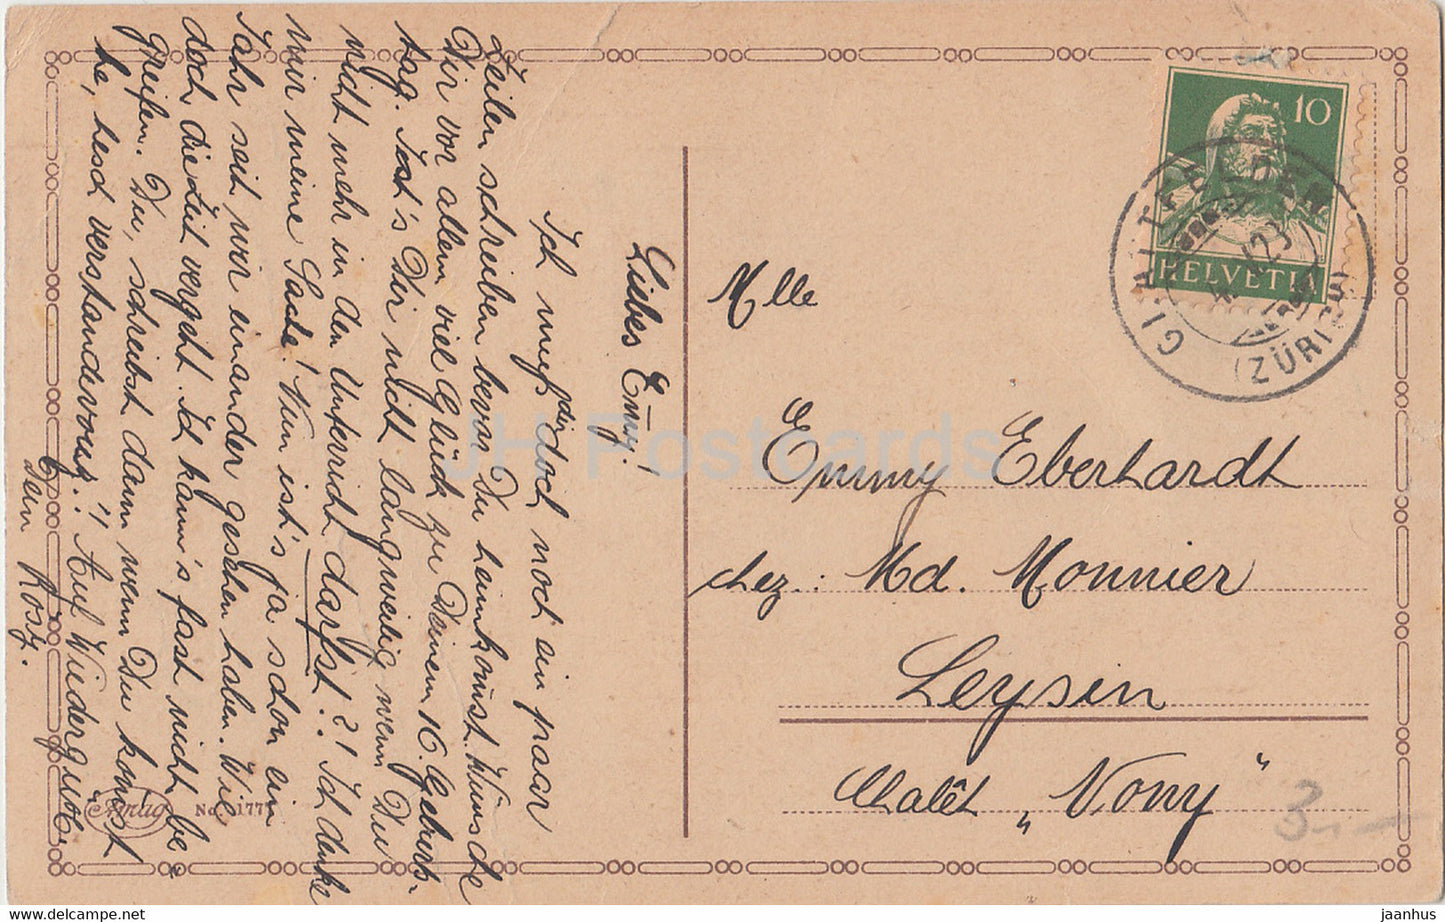 Birthday Greeting Card - Herzlichen Gluckwunsch zum Geburtstage - girl - Amag 1777 - old postcard - 1923 Germany - used